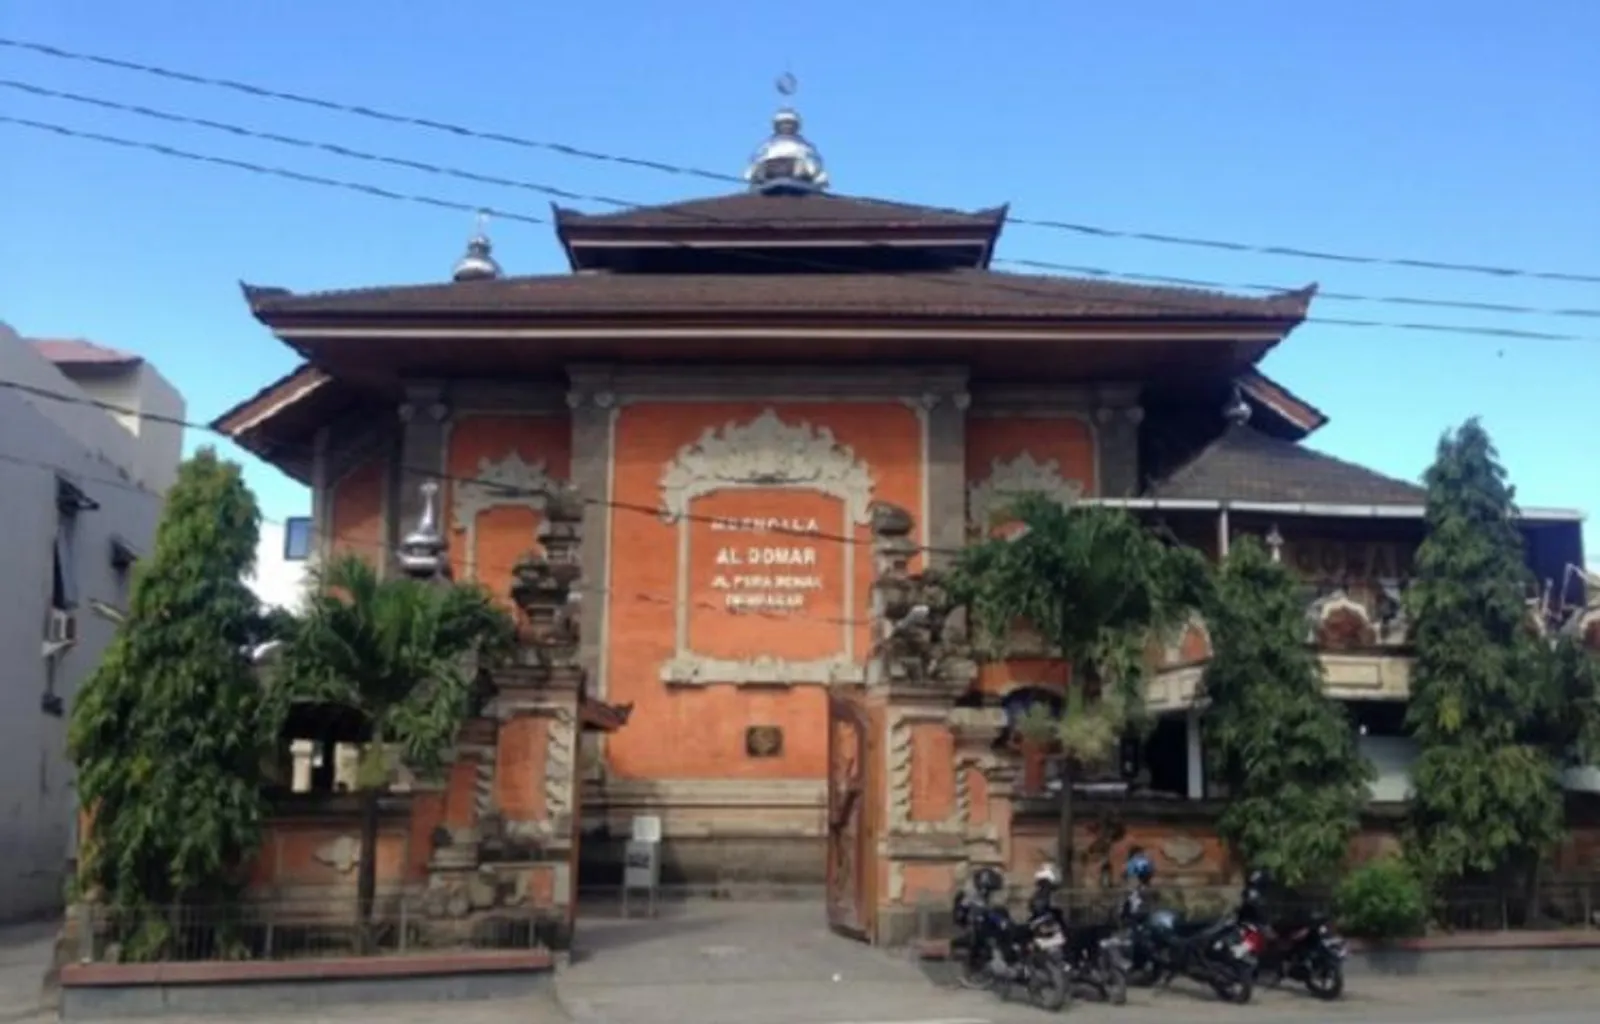 Liburan ke Bali? Inilah 6 Tempat Wisata Religi Islam di Bali 